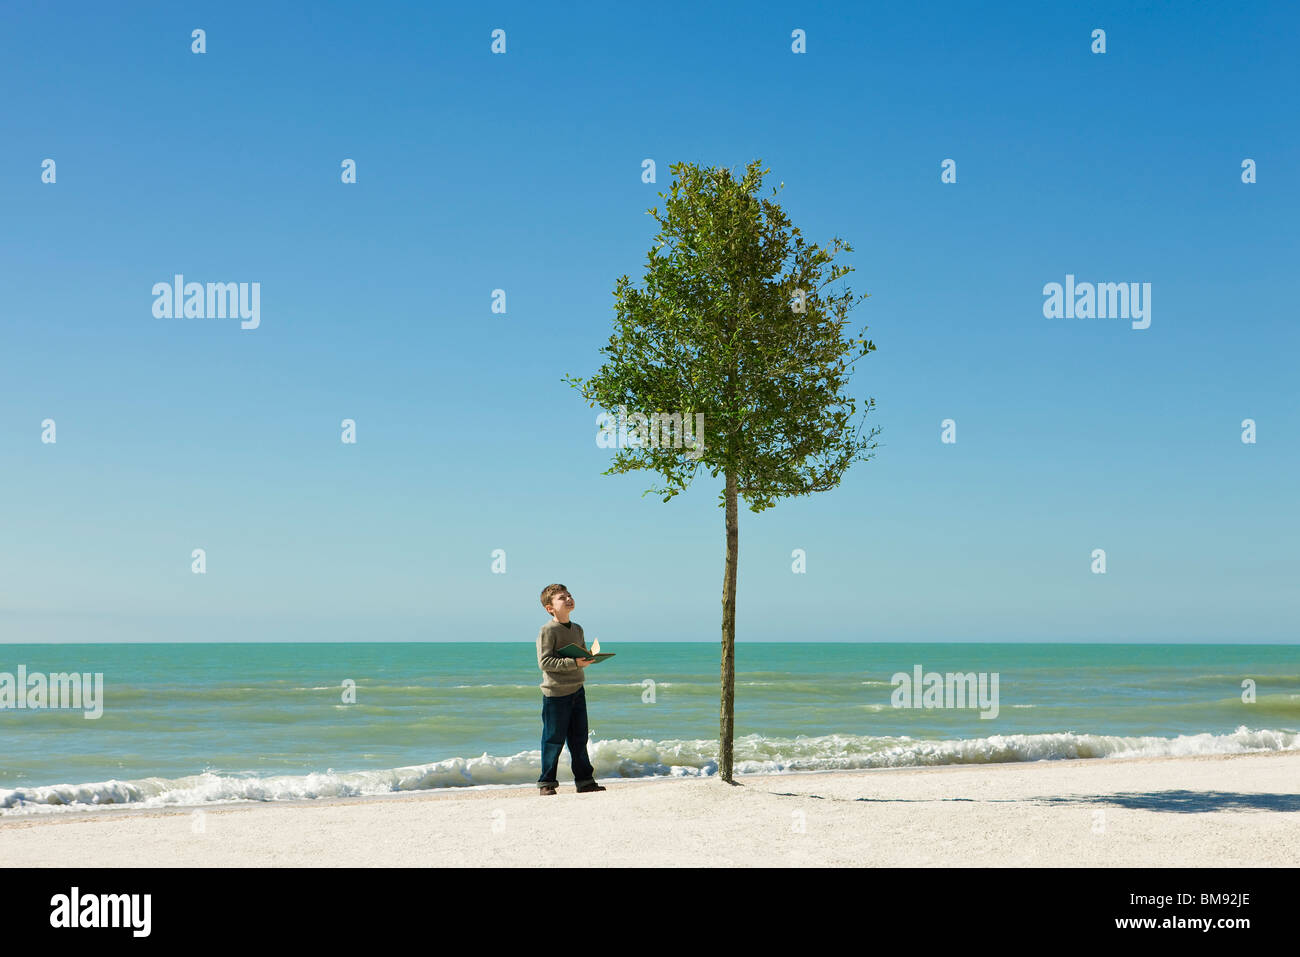 Boy standing on beach à livre ouvert dans les mains, admirant l'arboriculture dans le sable Banque D'Images